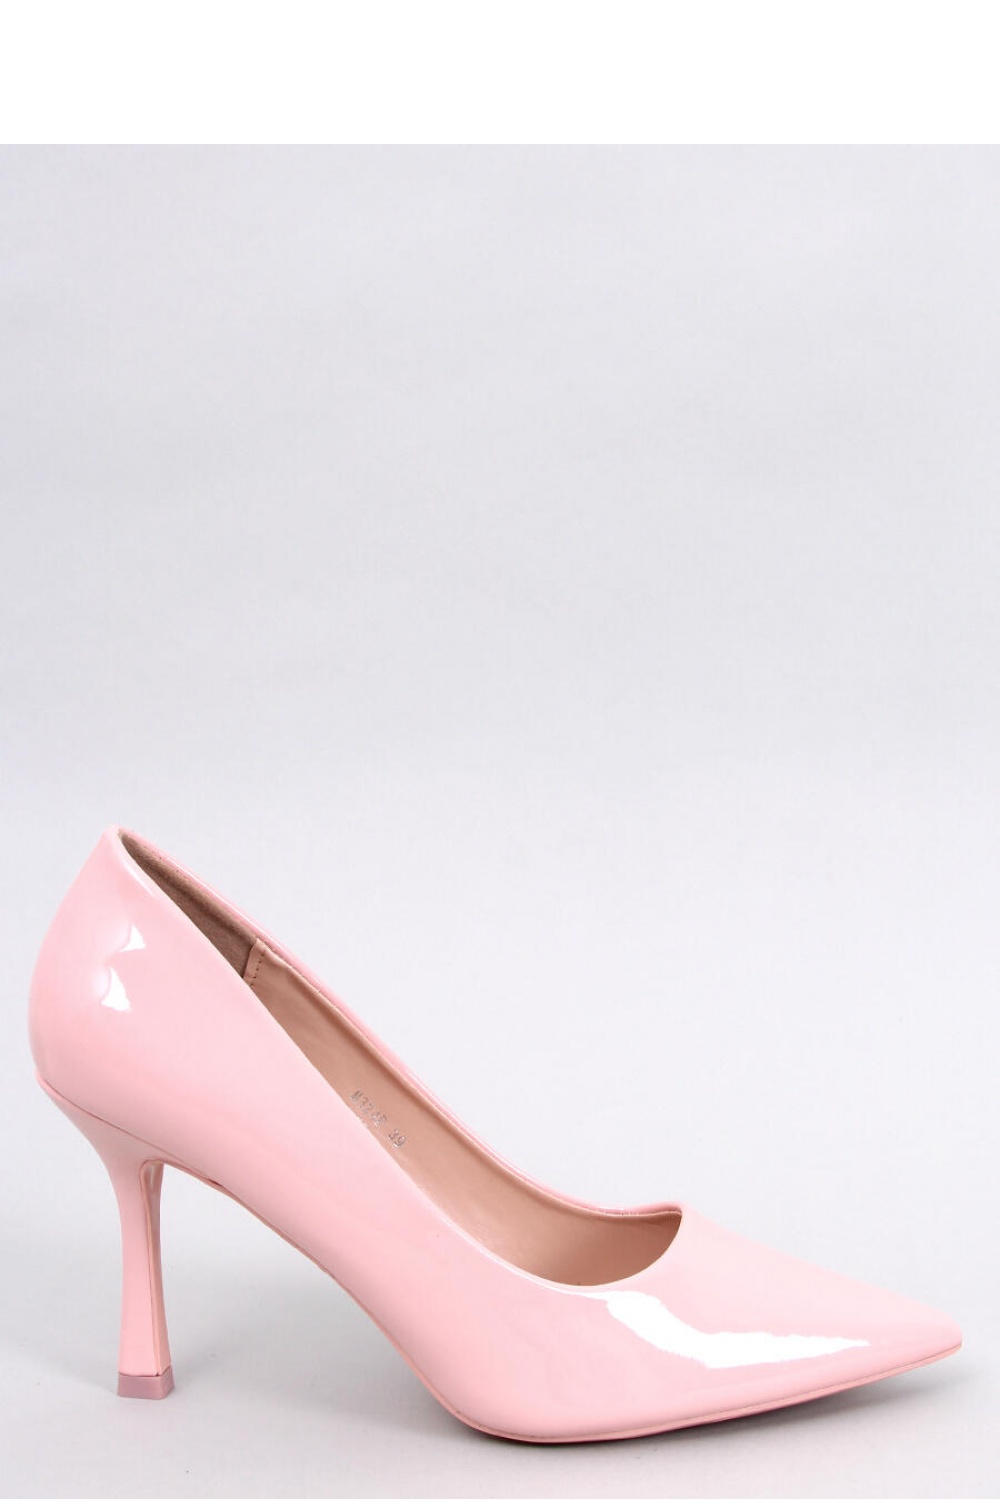 High heels model 181979 Inello